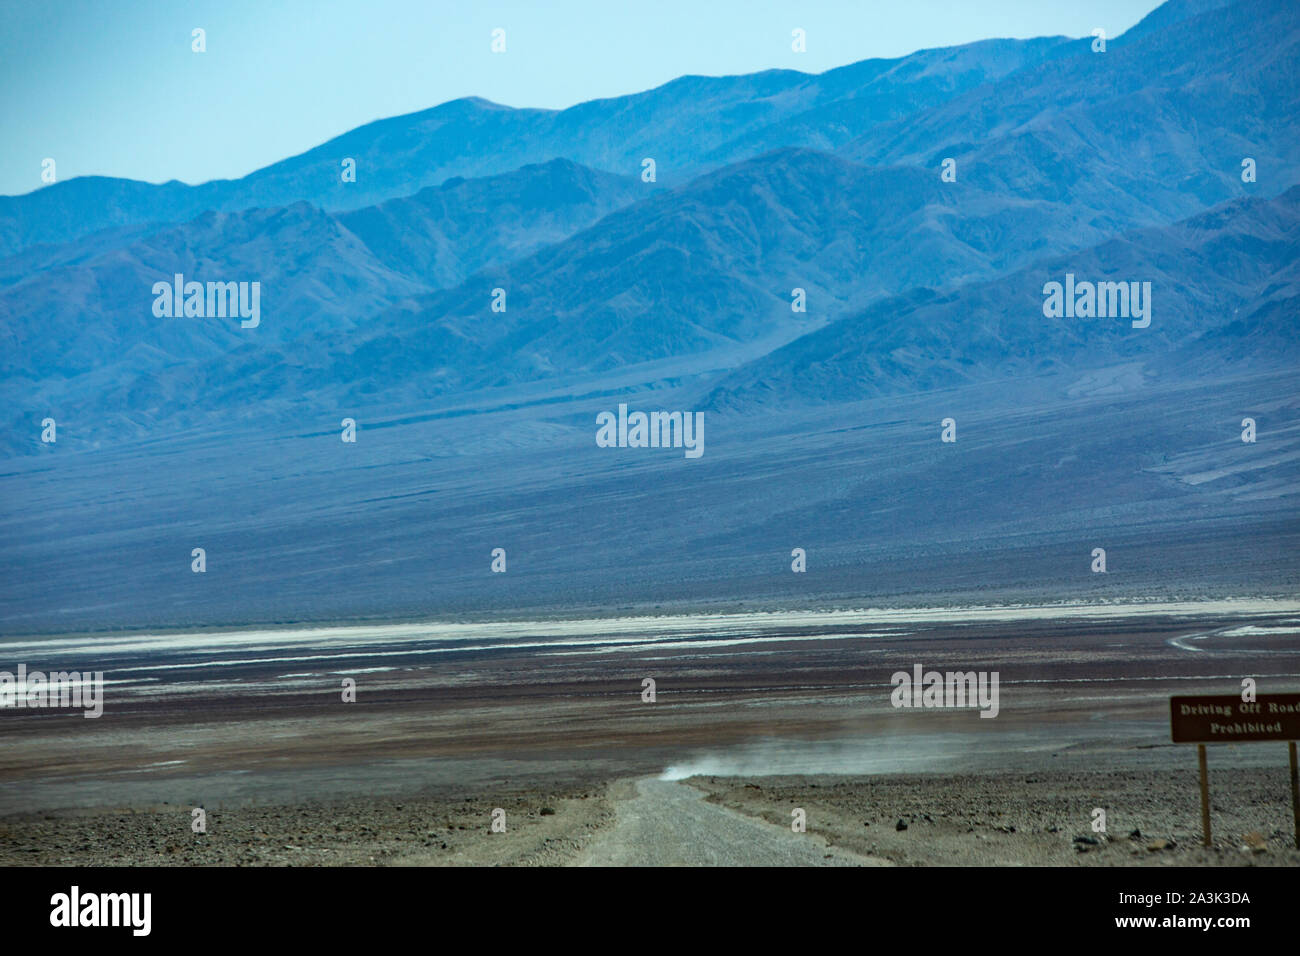 Staubwolke eines Autos auf einer Schotterpiste im Death Valley Nationalpark in Kalifornien / USA Stock Photo